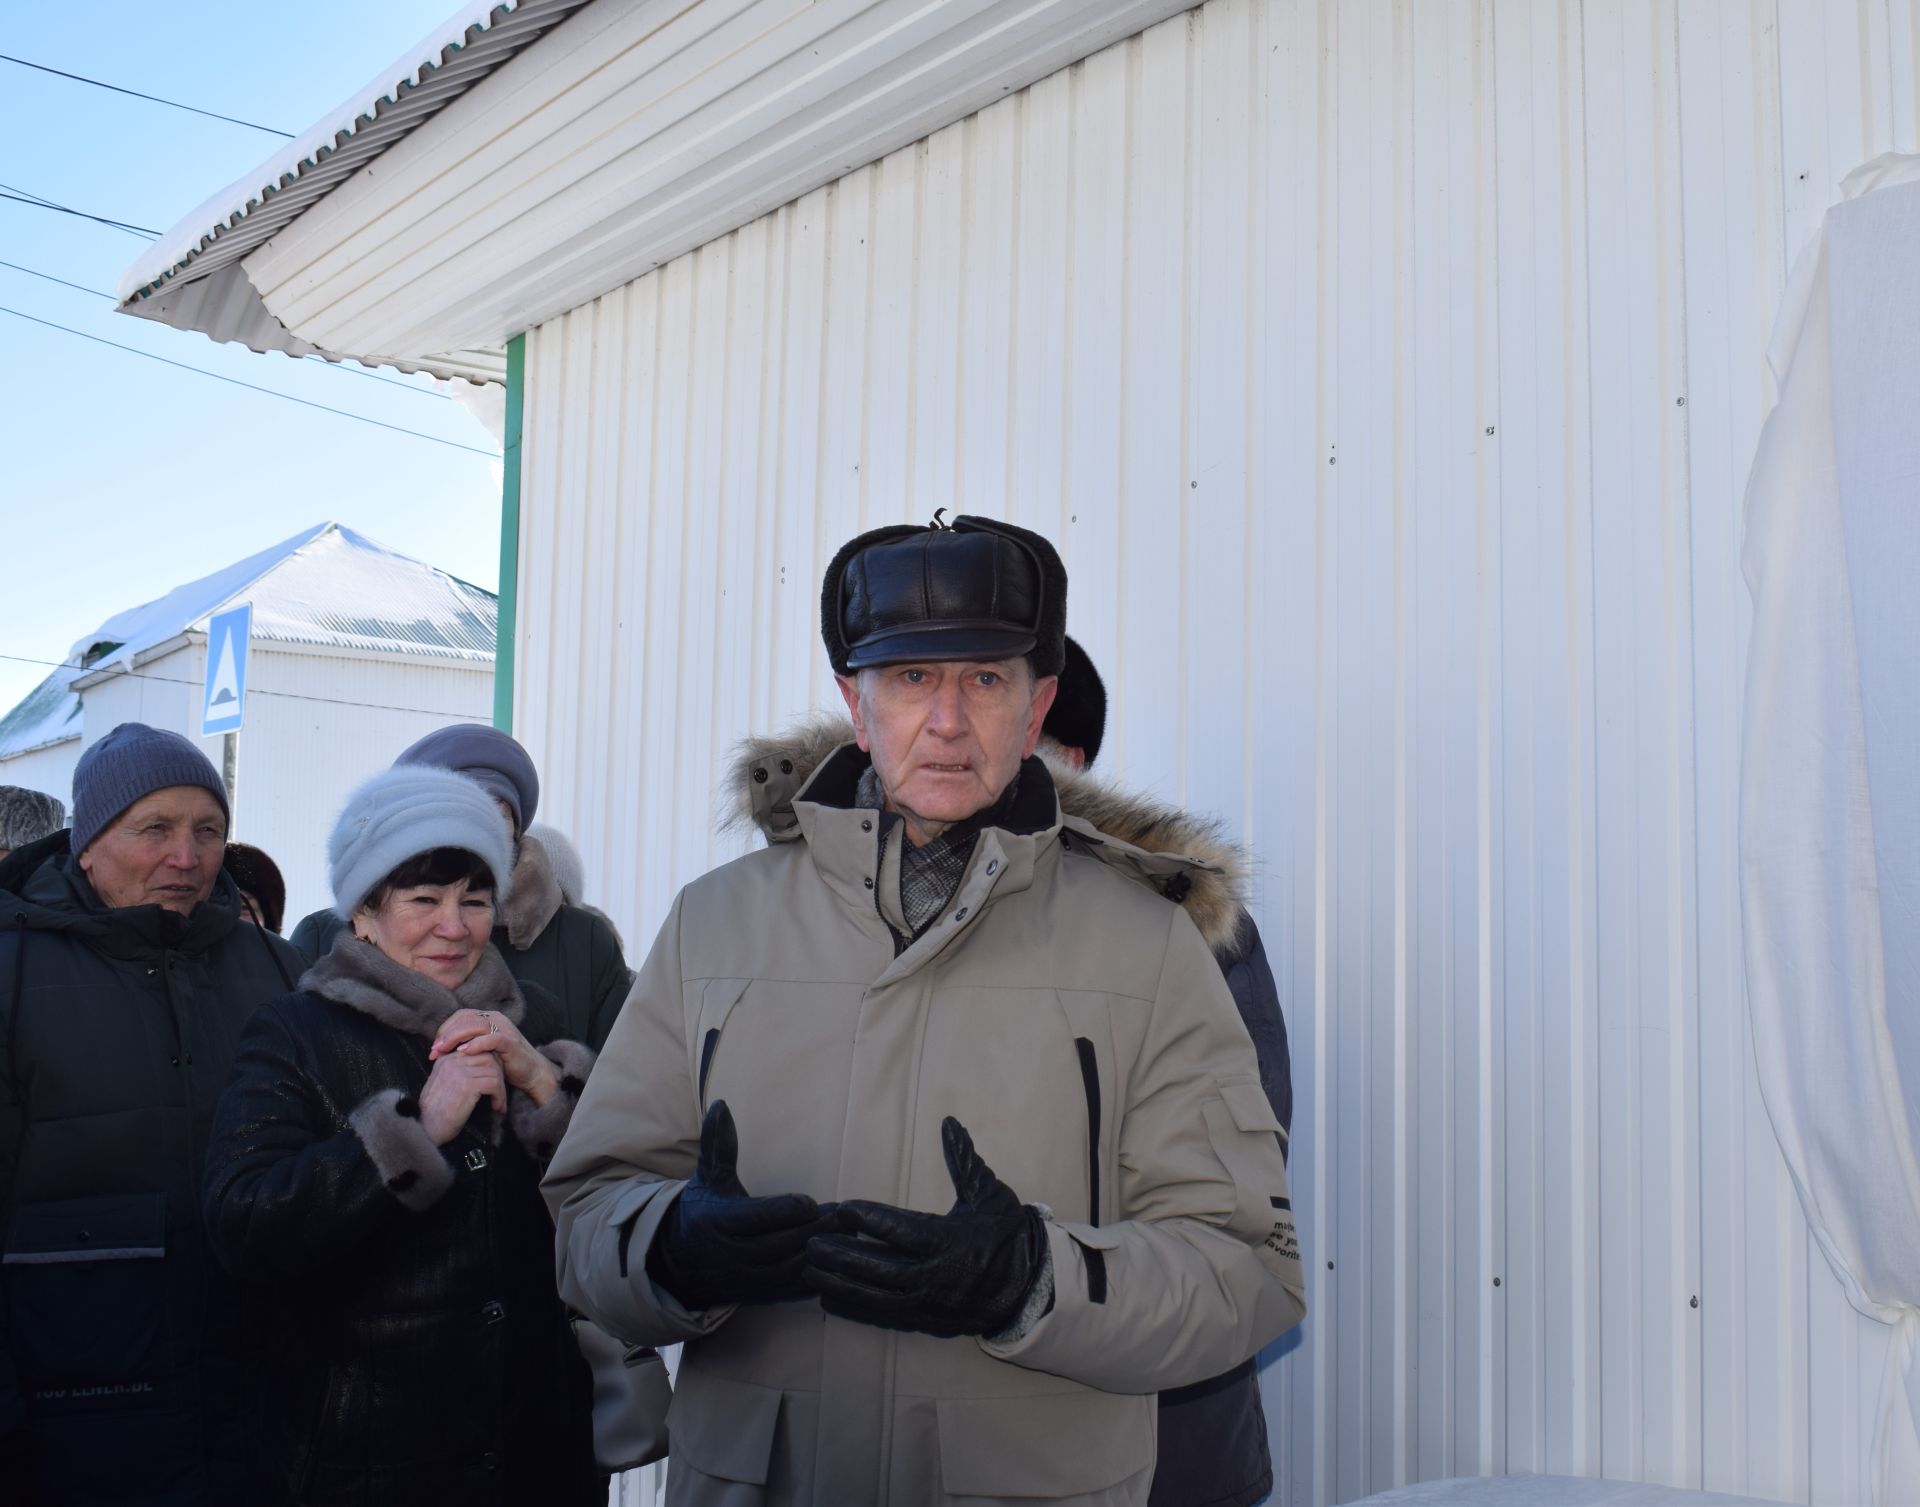 В Азнакаево состоялось торжественное открытие доски почета Каримову Миргасиму Ильясовичу